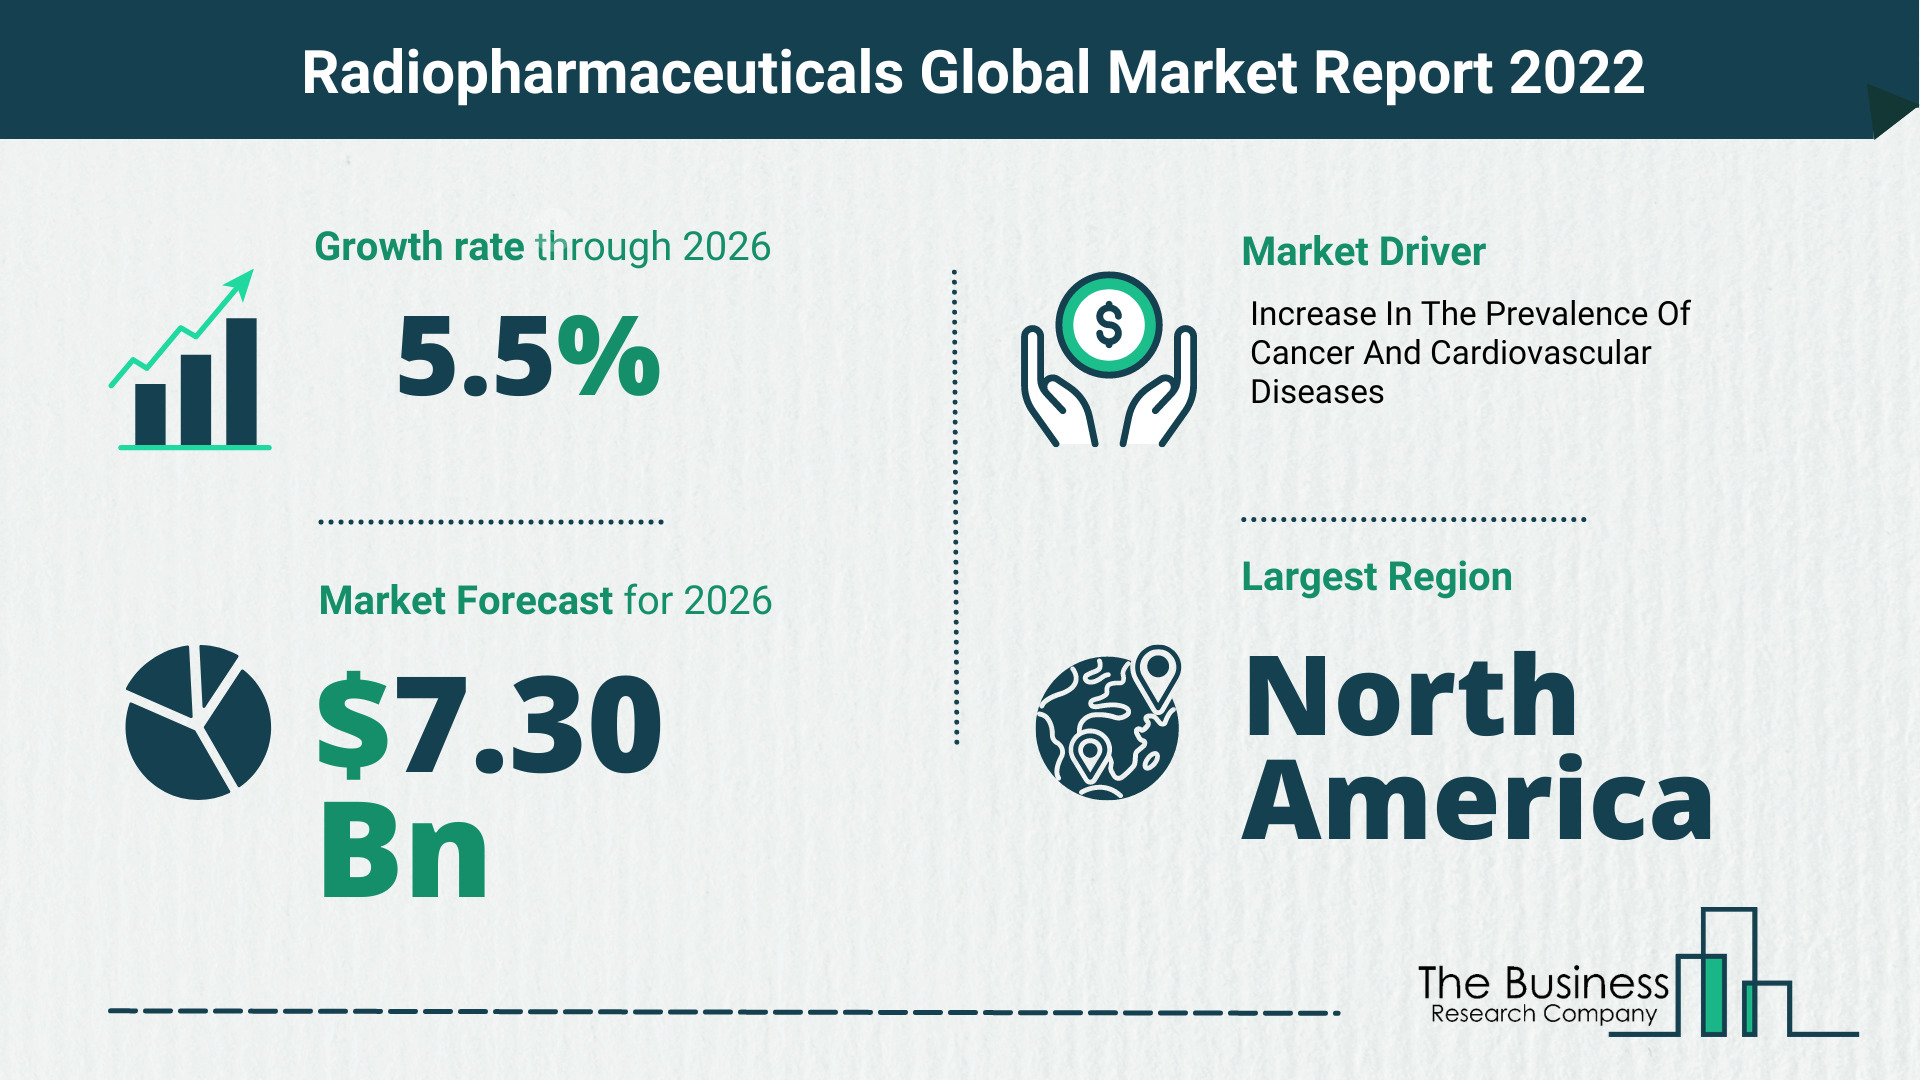 Global Radiopharmaceuticals Market Size